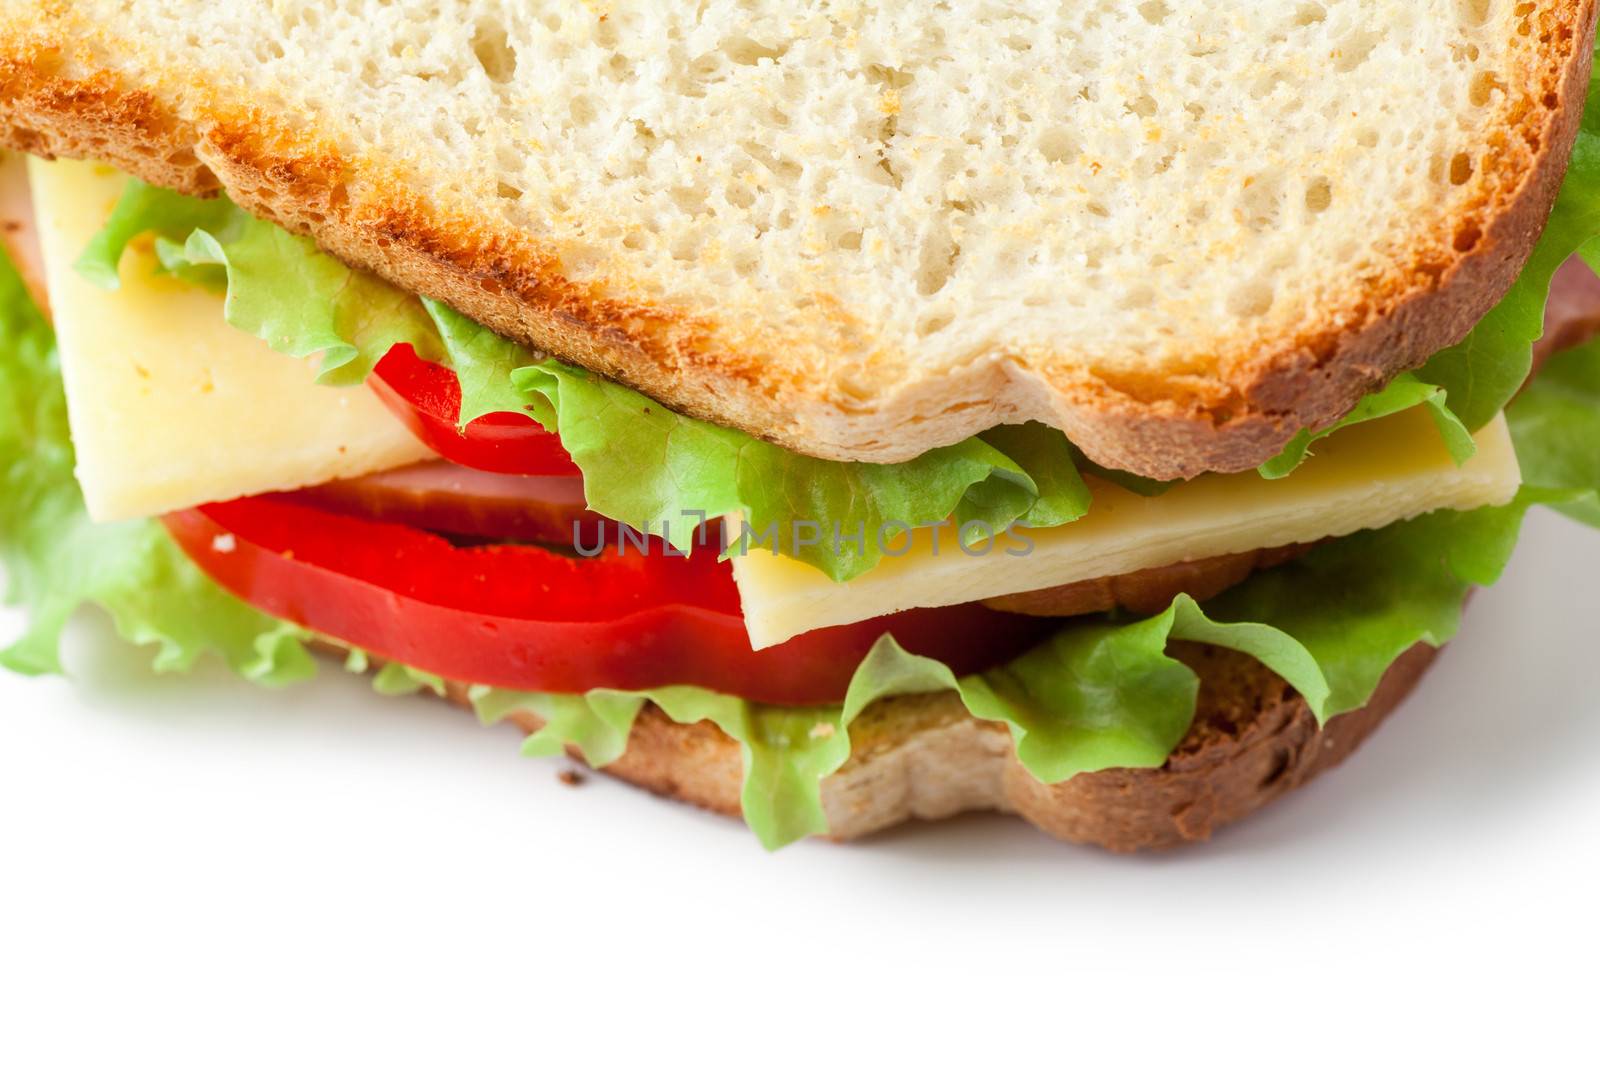 Sandwich by AGorohov